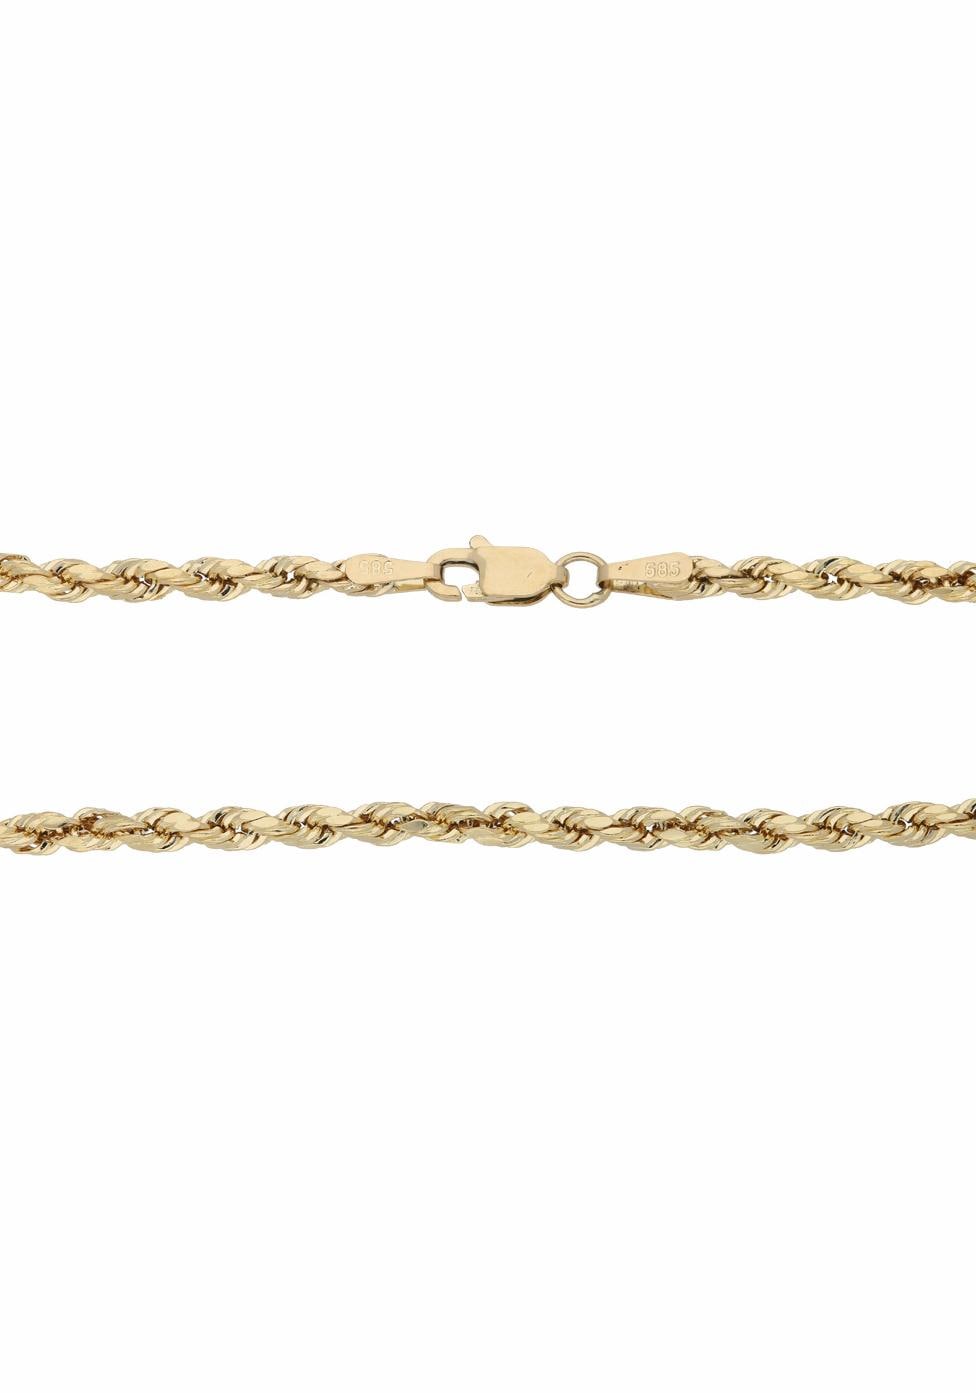 Korderlkettengliederung, »Schmuck kaufen glänzend« Goldkette online Geschenk, Firetti